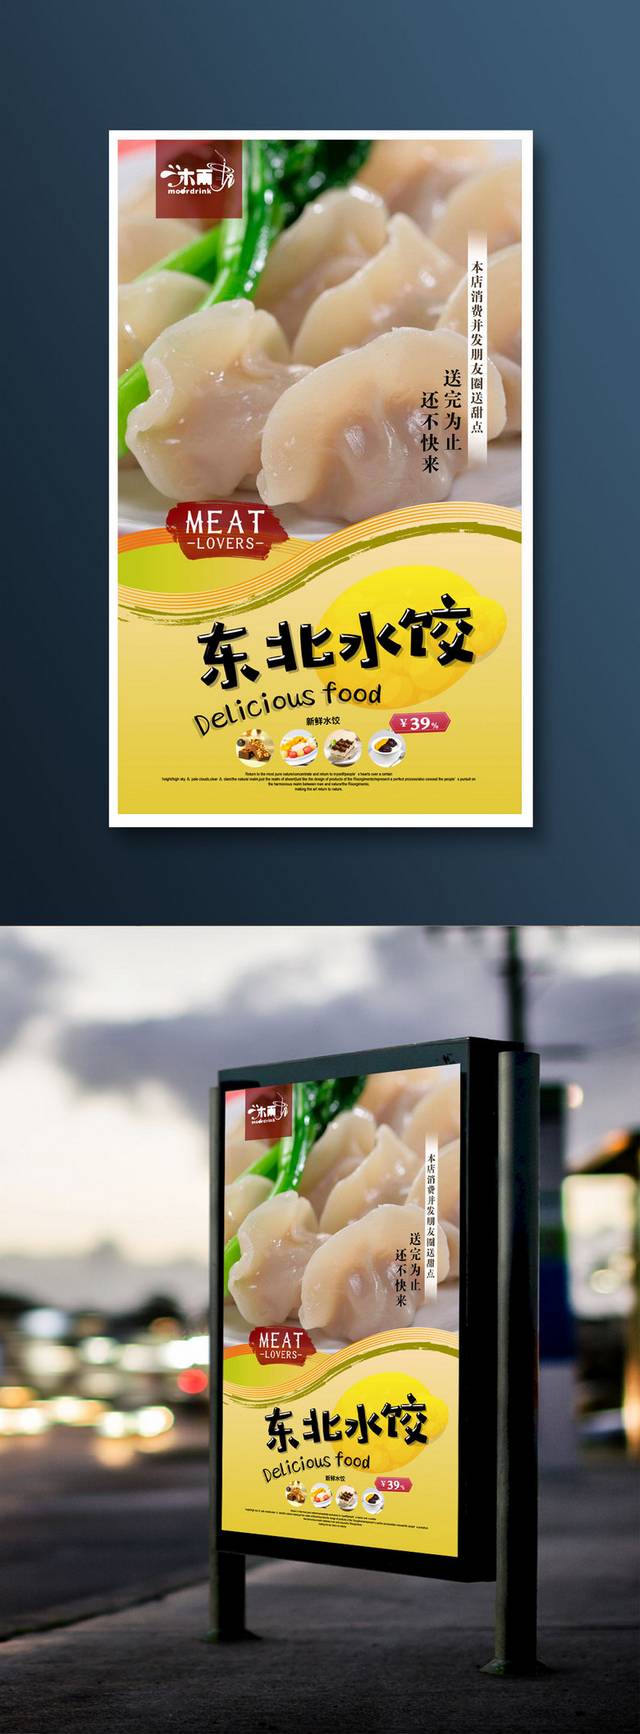 原创哈尔滨水饺宣传海报设计